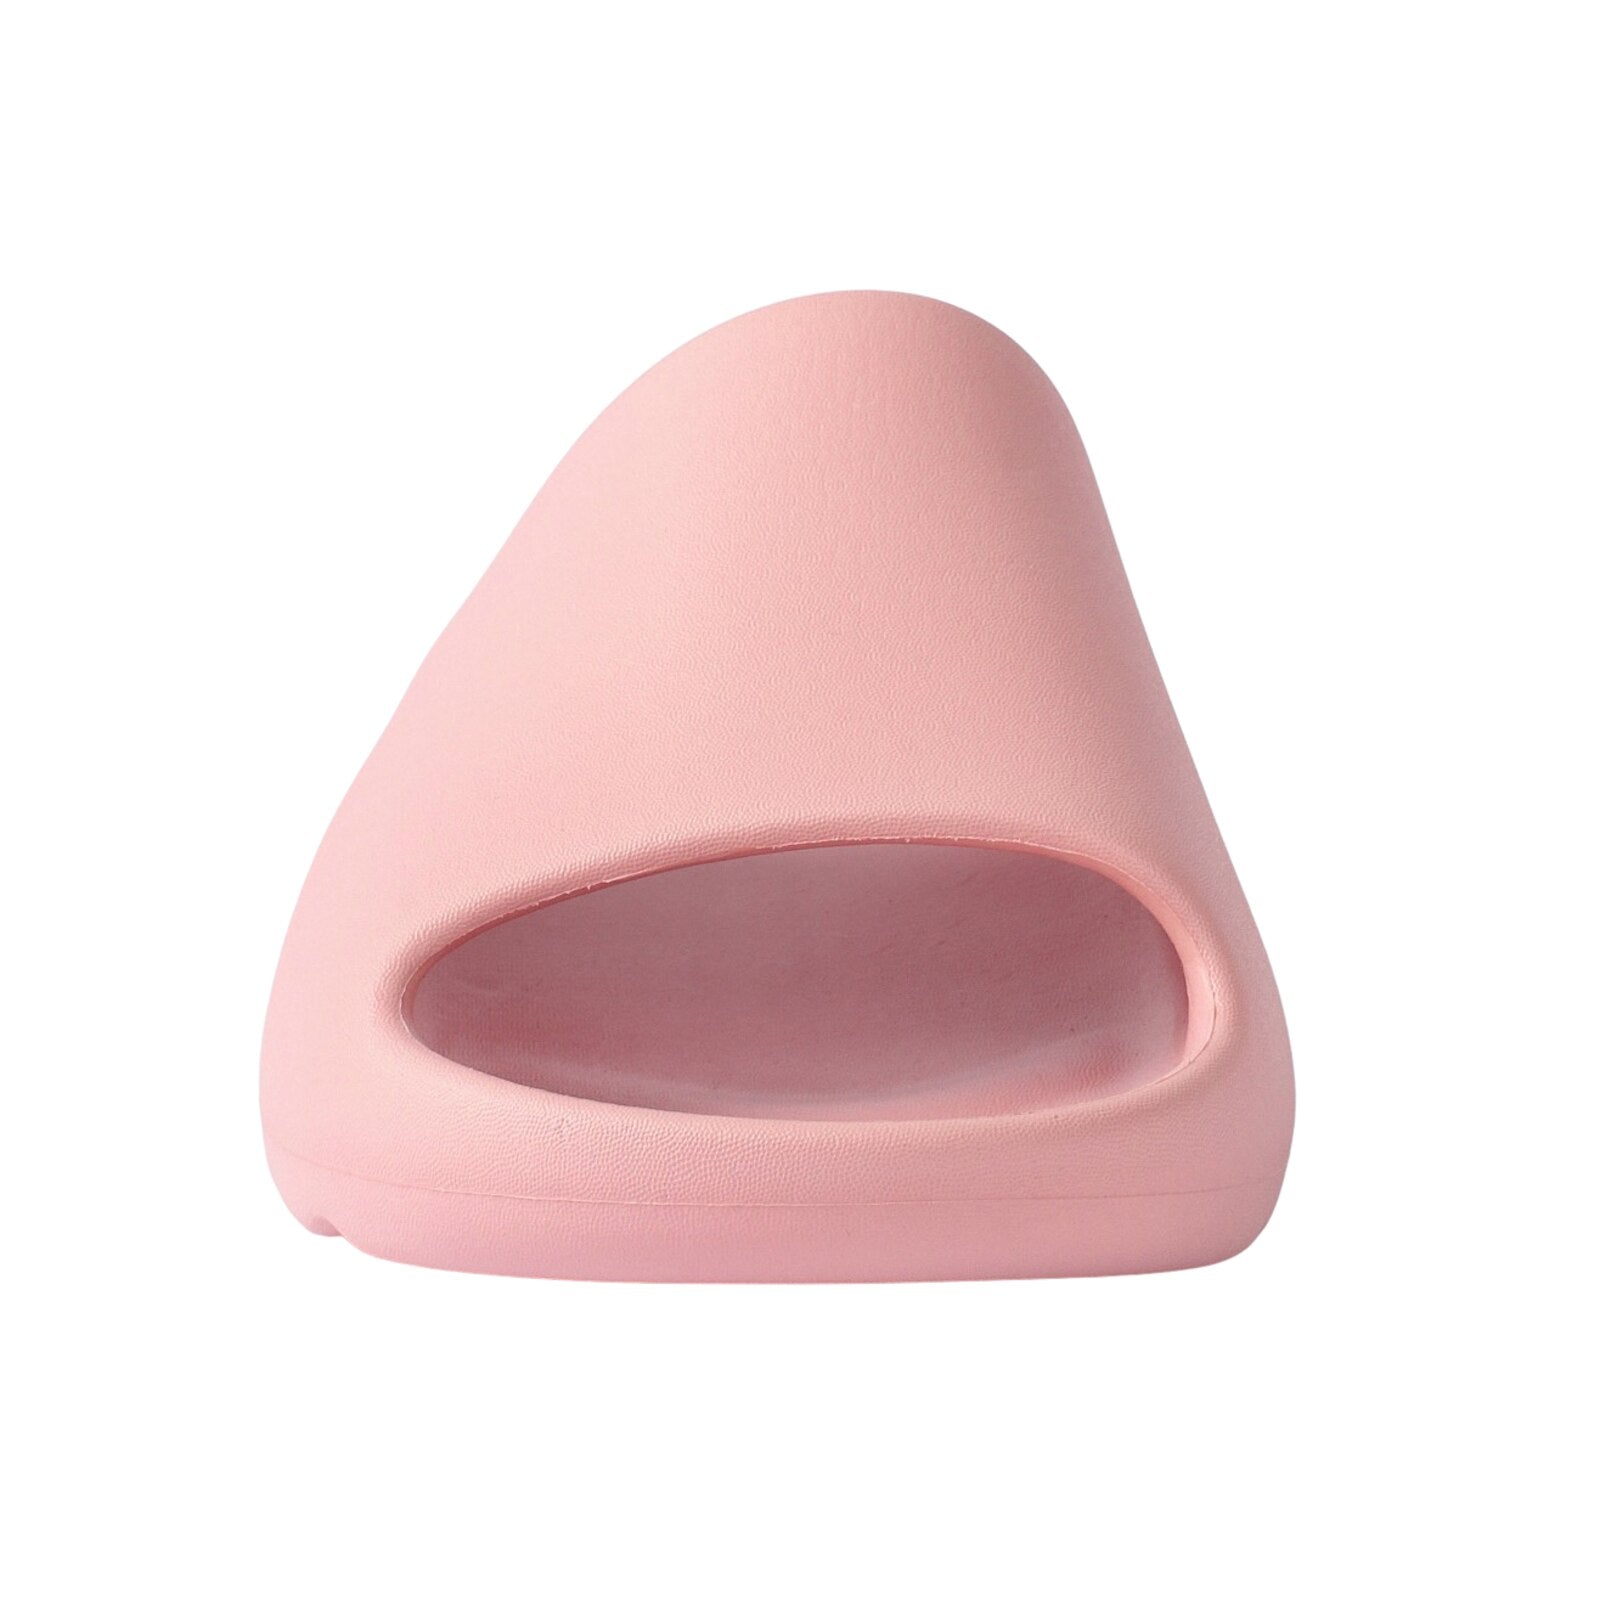 Pillow Slides™ - Women's: Pink